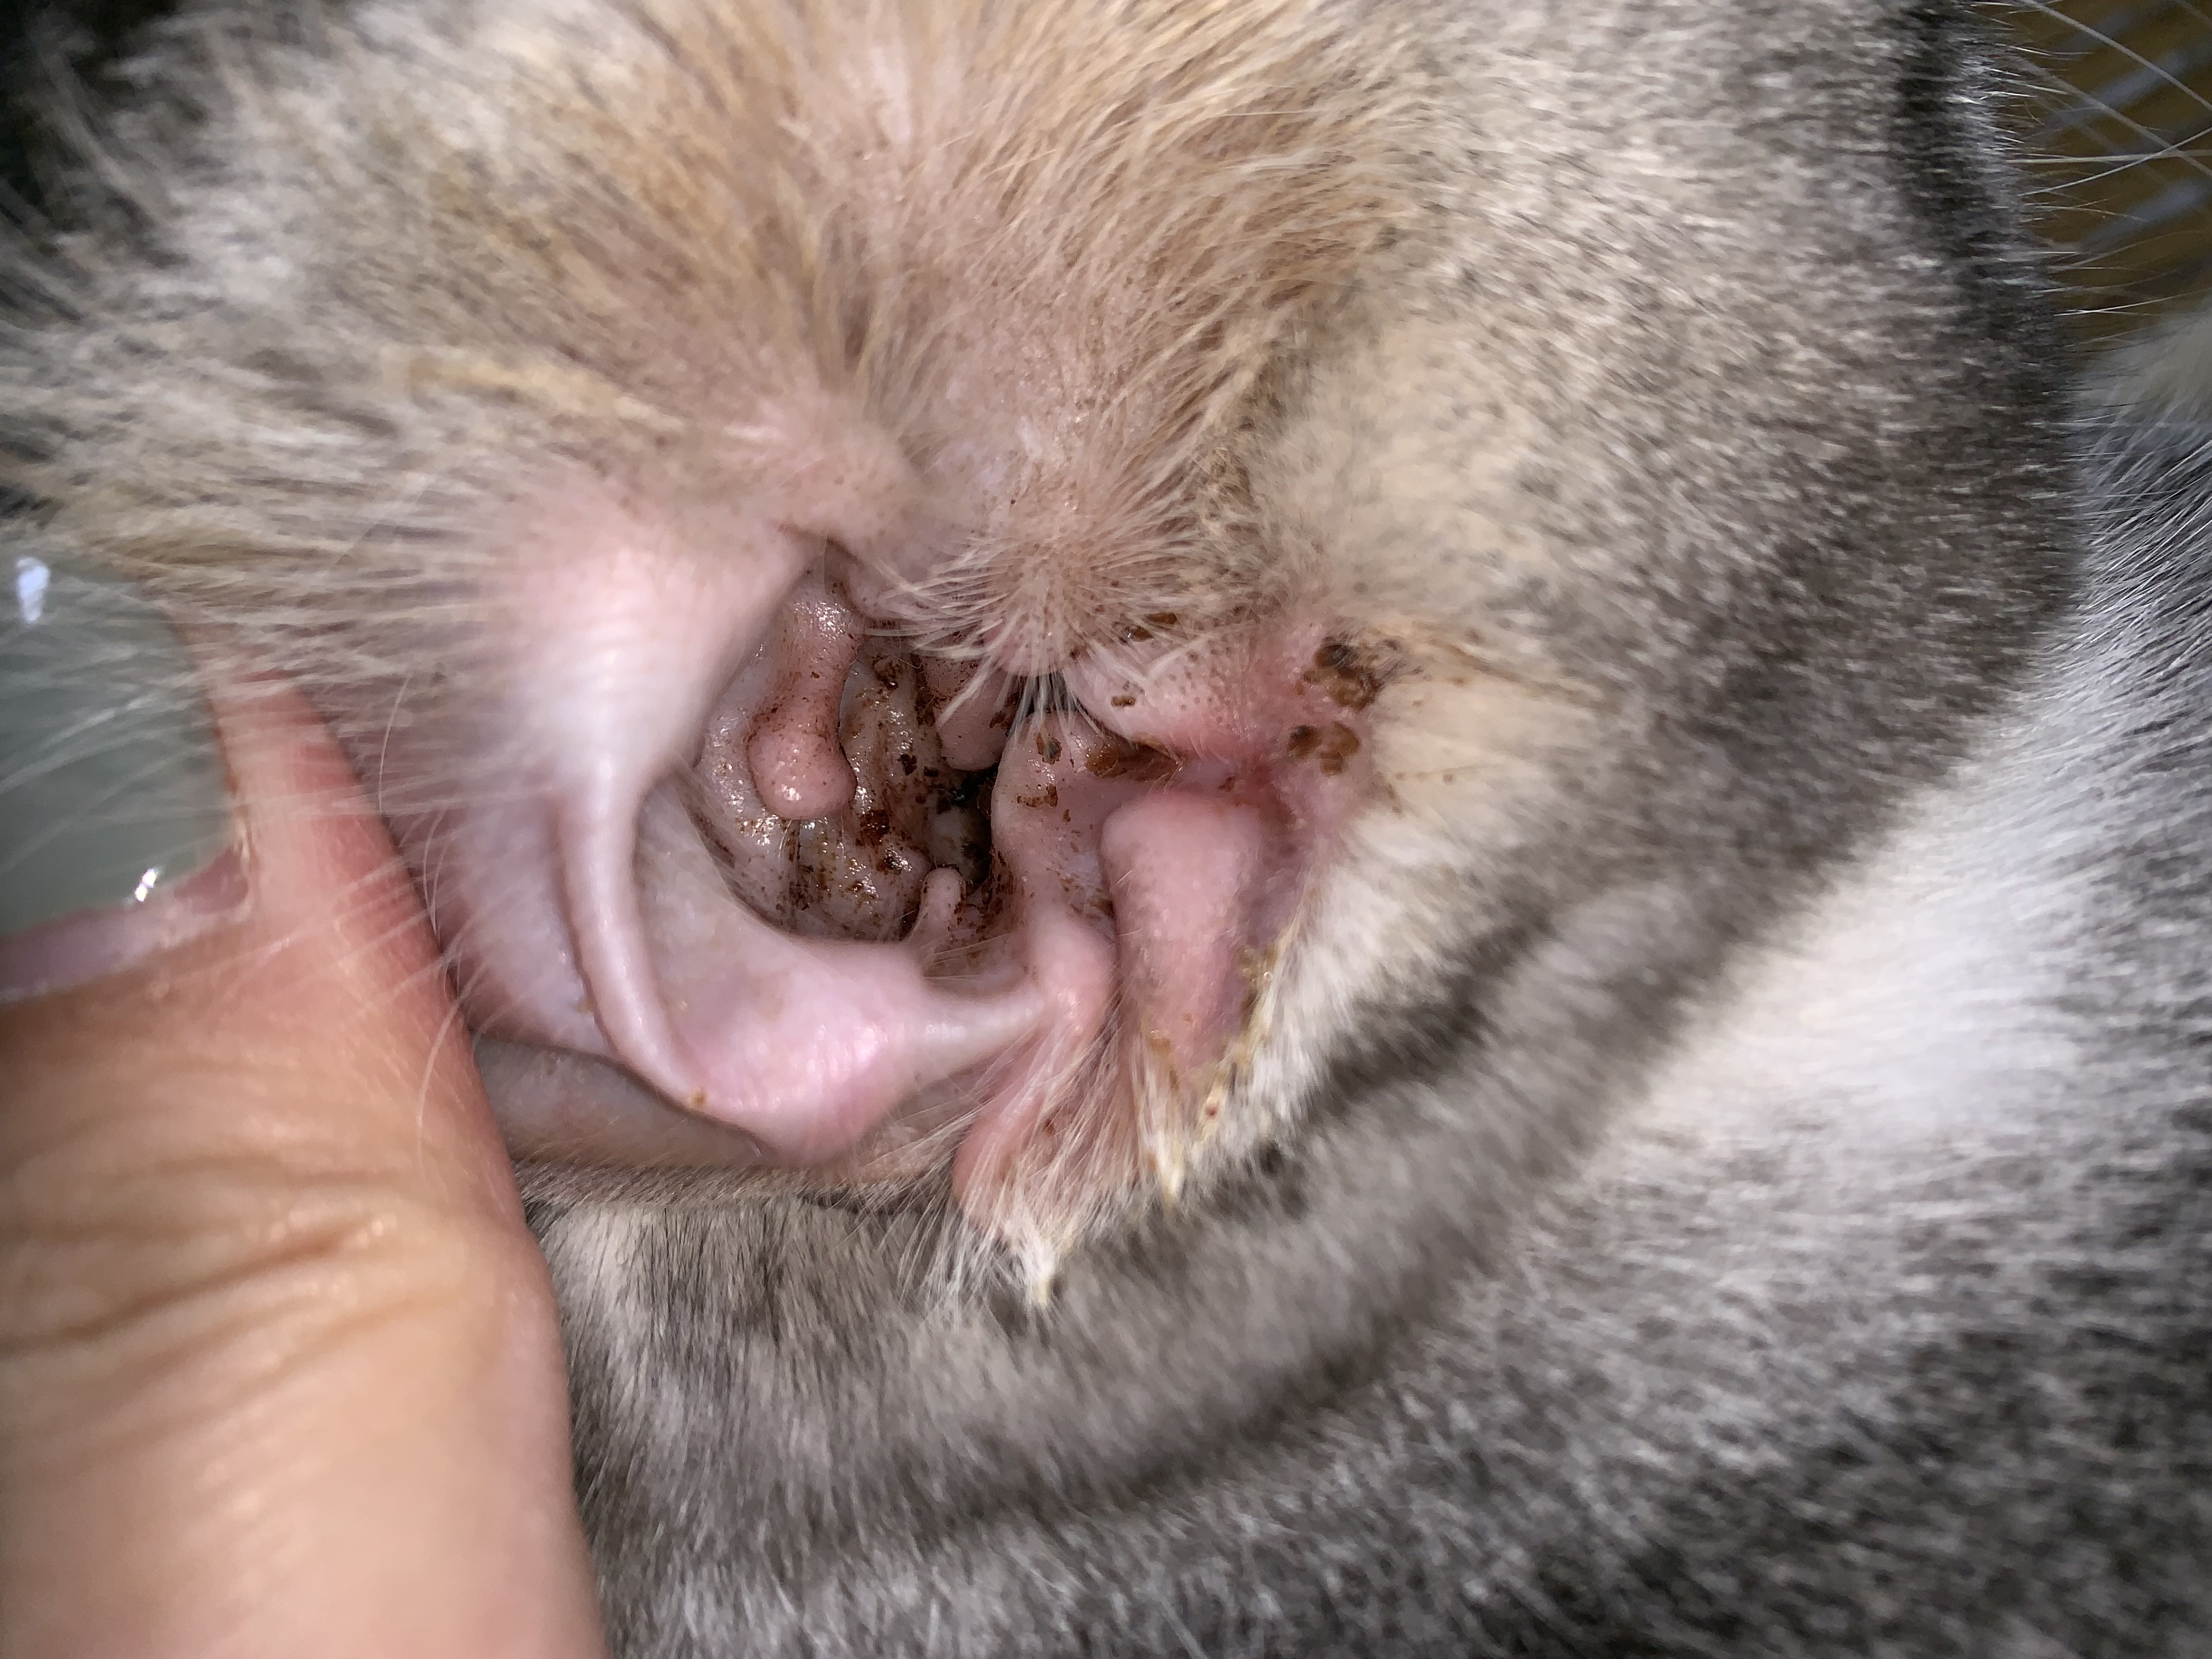 检测出犬小孢子菌无耳螨,医生口述属马拉色真菌感染,开始每天洗耳后上